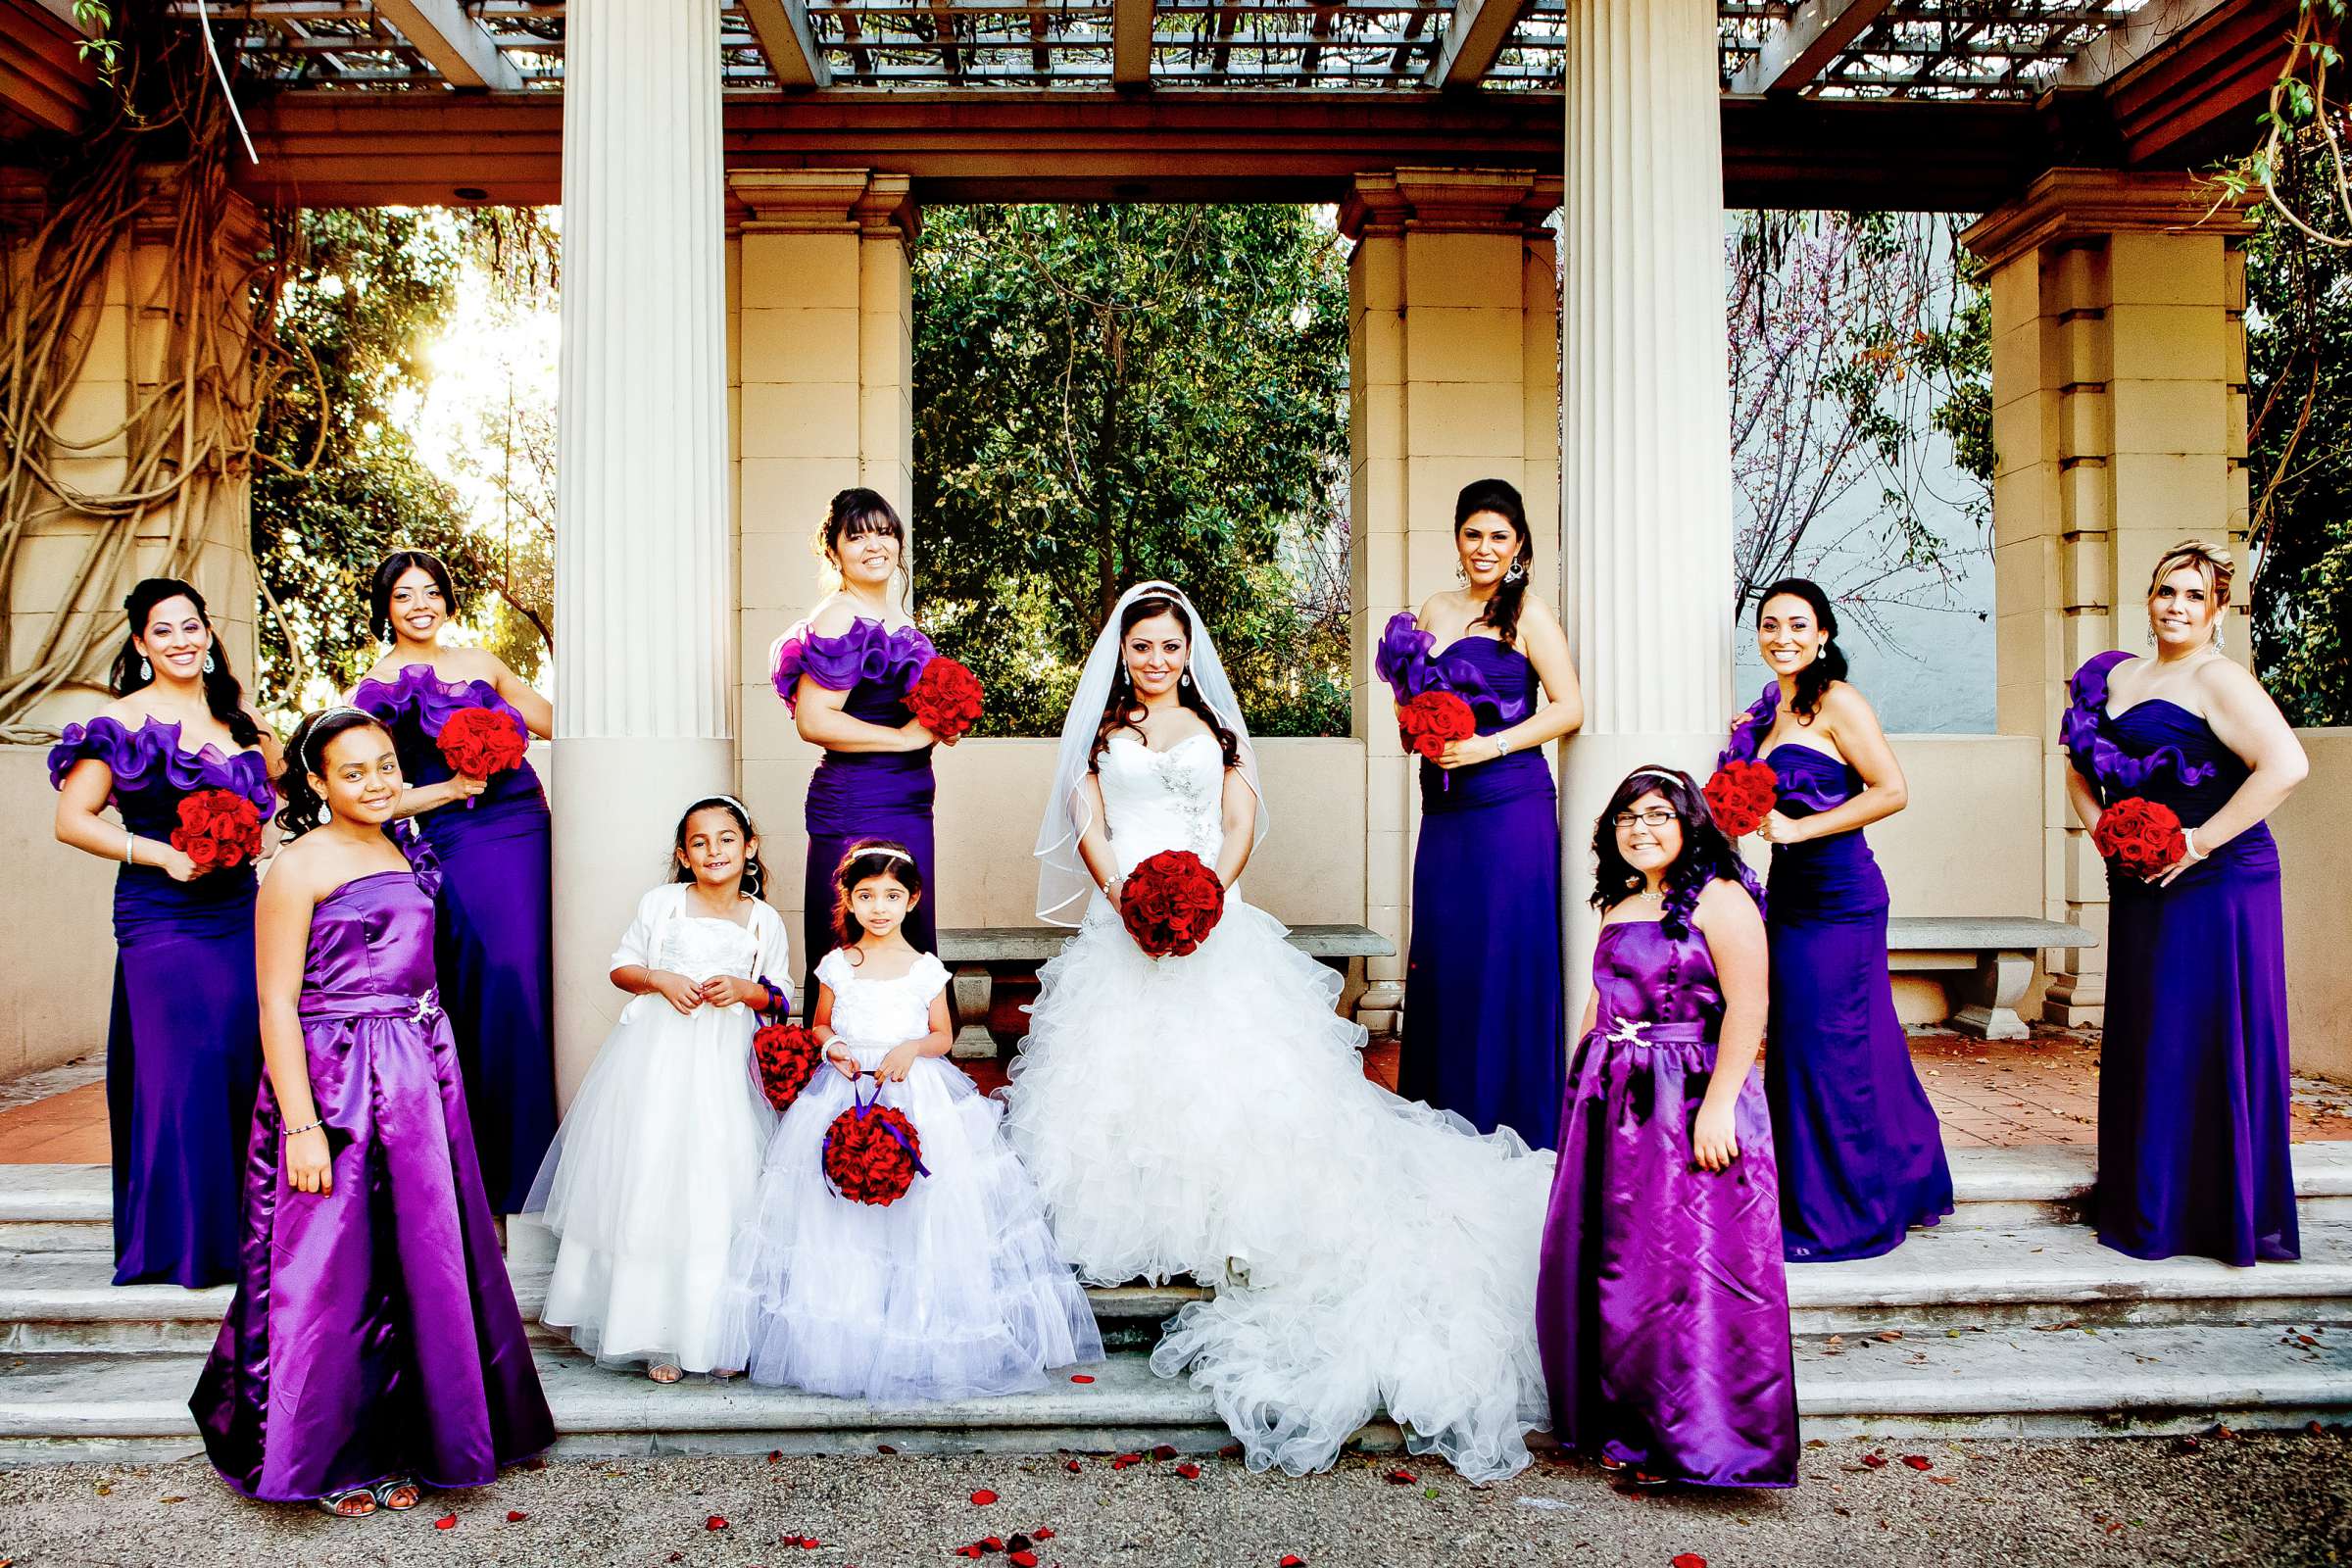 El Cortez Wedding, Mariluz and Luis Wedding Photo #307600 by True Photography